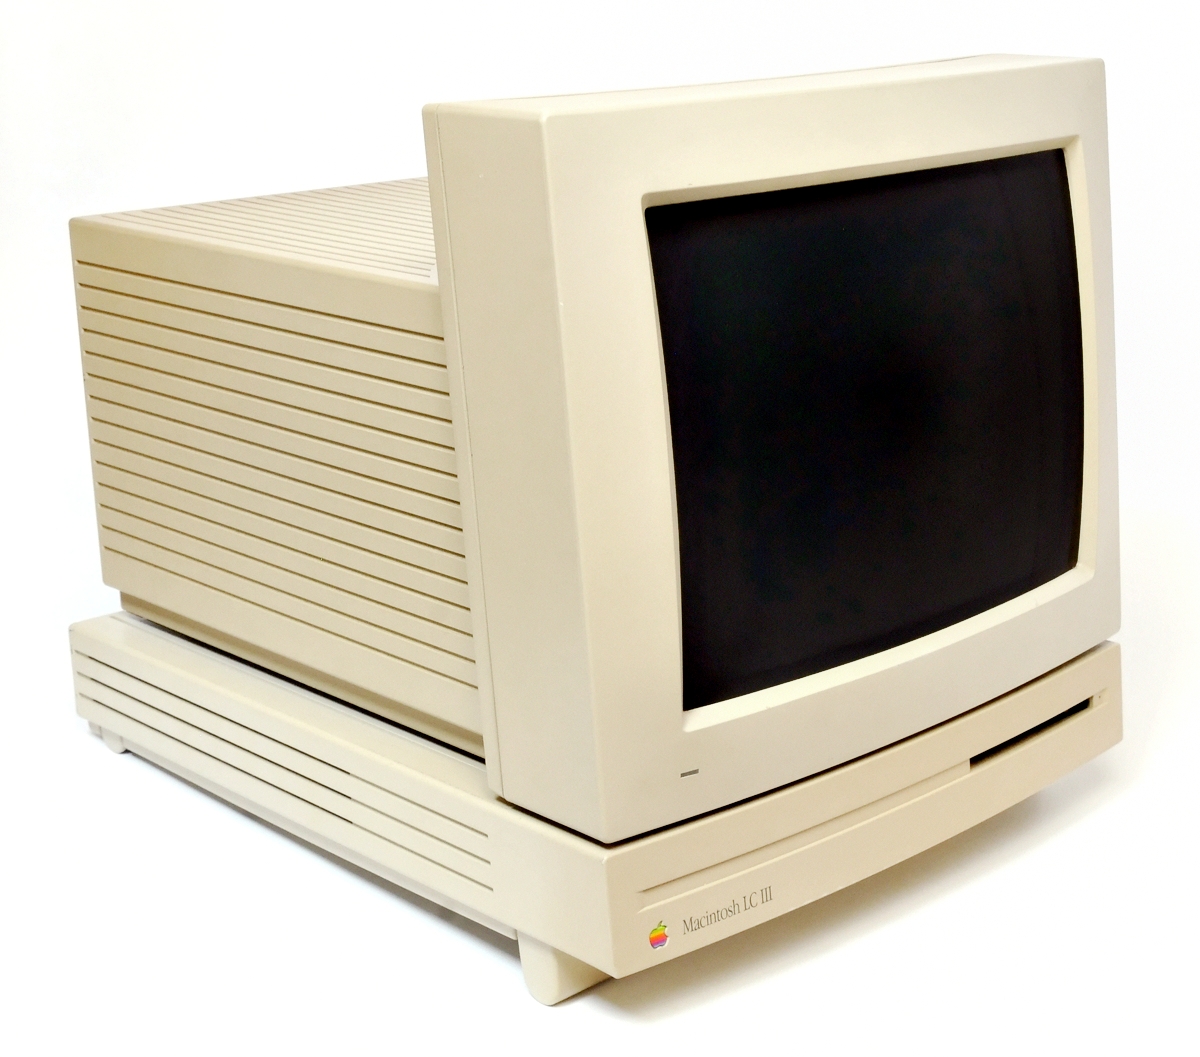 図2-11.Macintosh LC IIIと12インチRGBディスプレイ